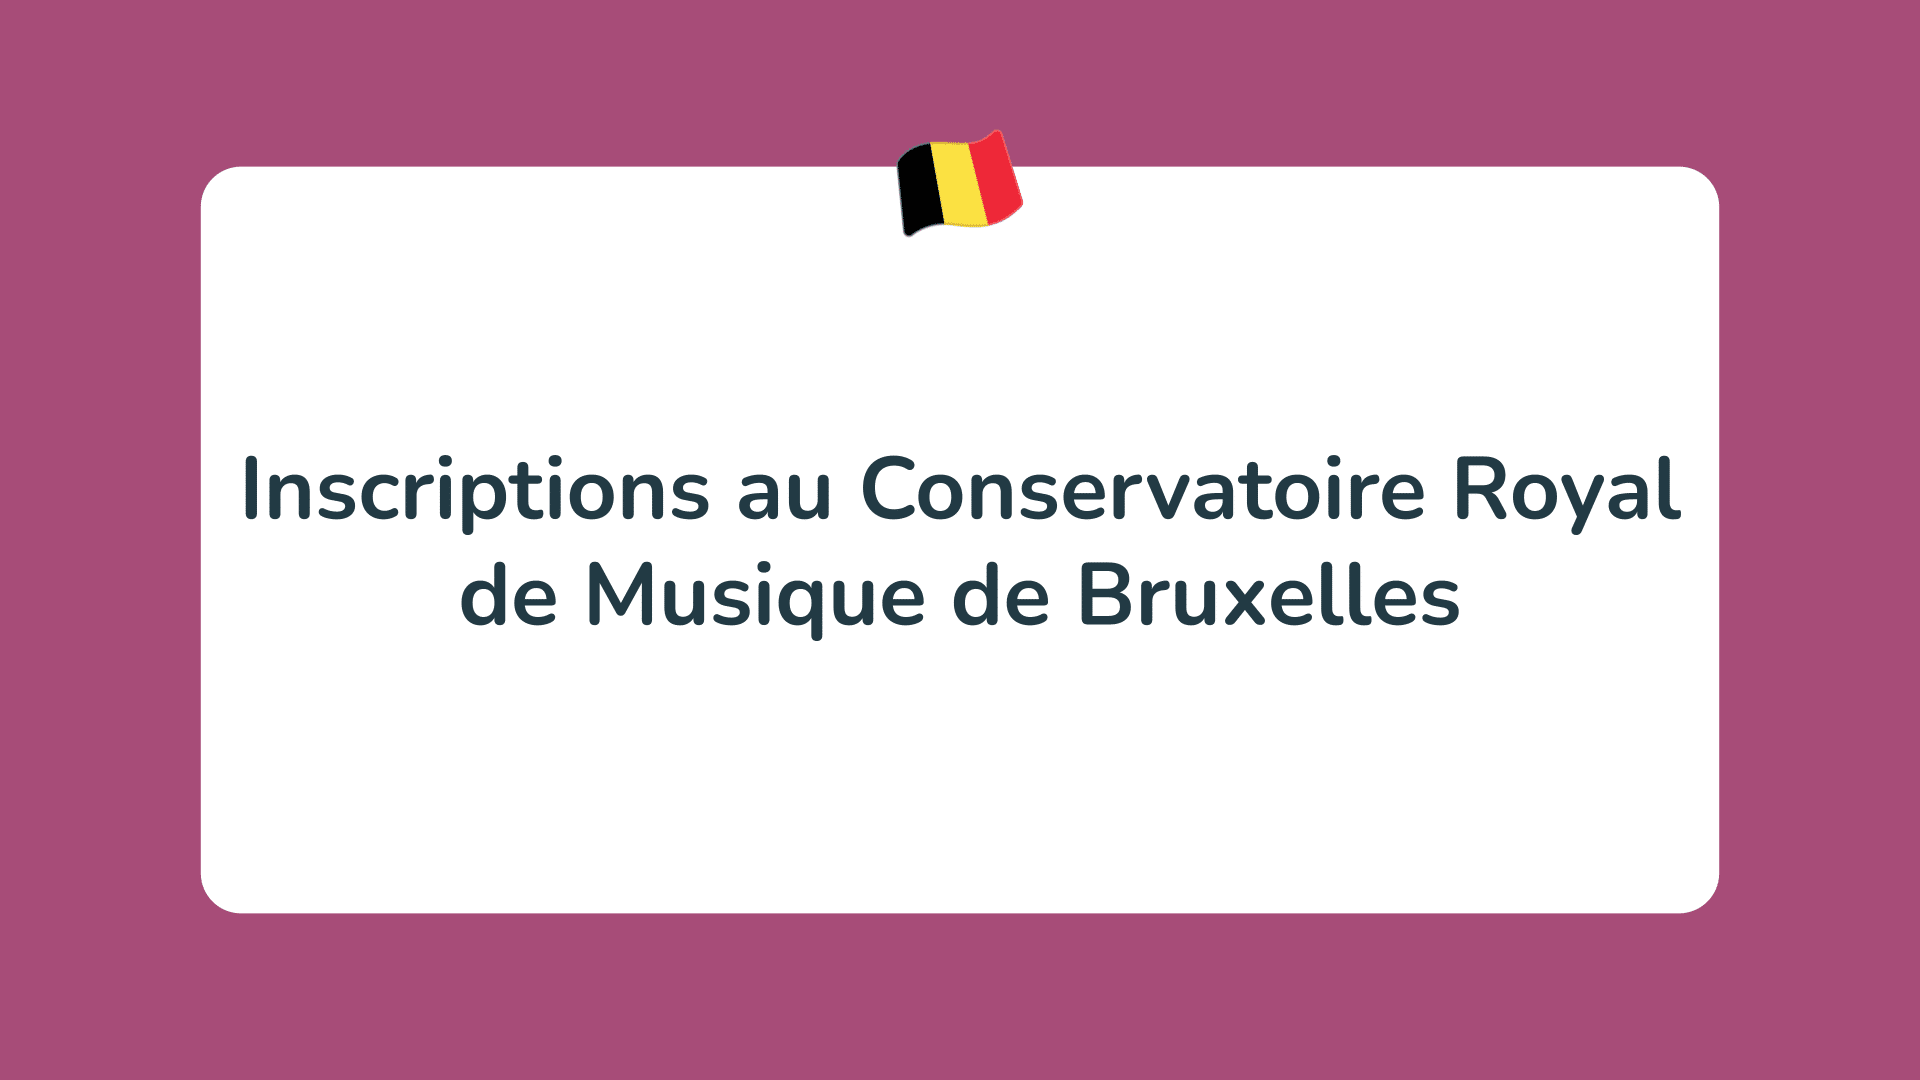 Inscriptions au Conservatoire Royal de Musique de Bruxelles